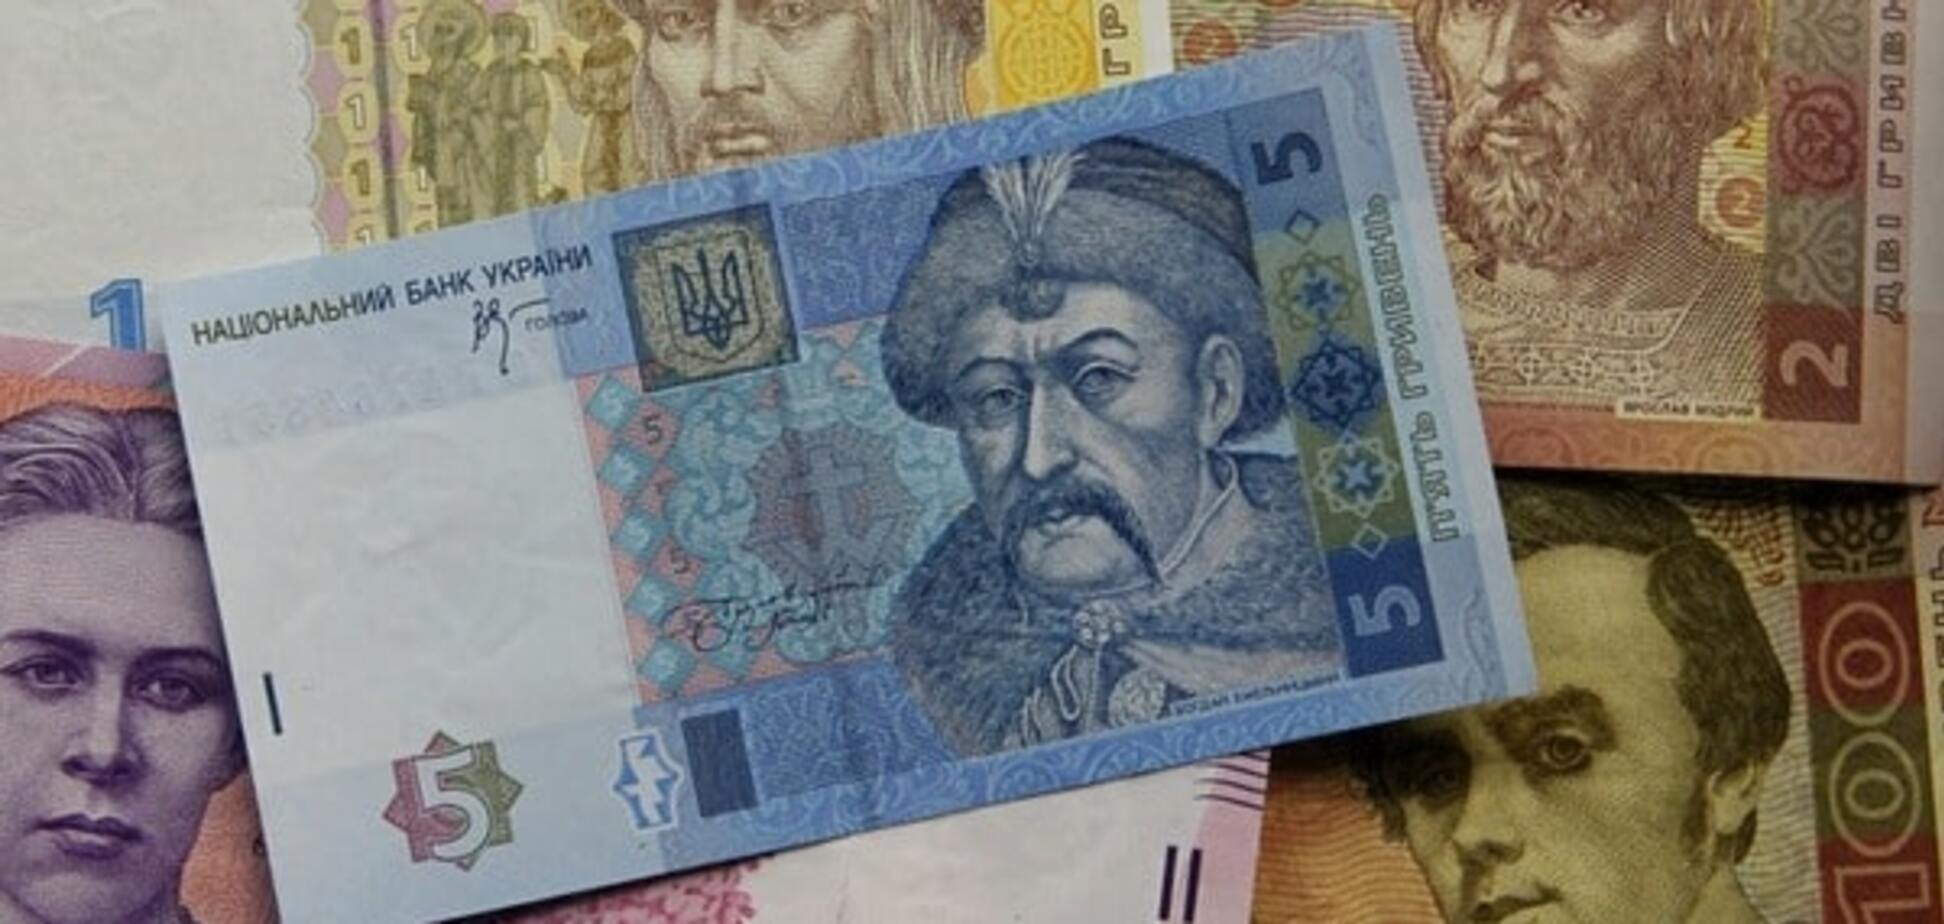 Вкладчикам банка 'Хрещатик' выплатили 2,5 миллиарда – заместитель Кличко